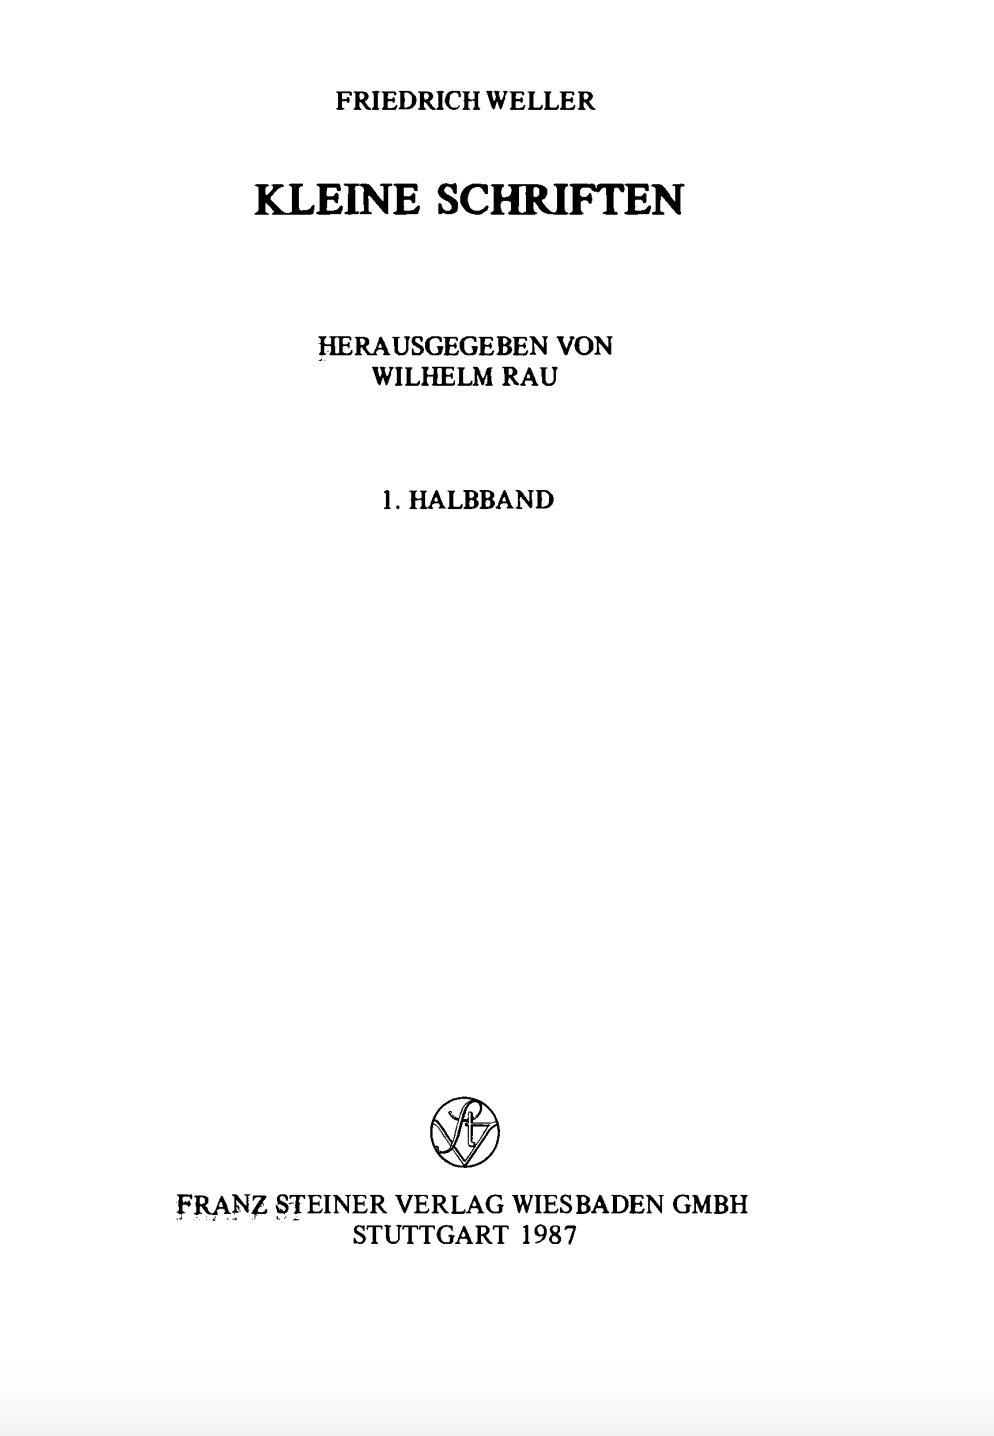 Kleine Schriften Friedrich Weller Vol 1-front.jpg